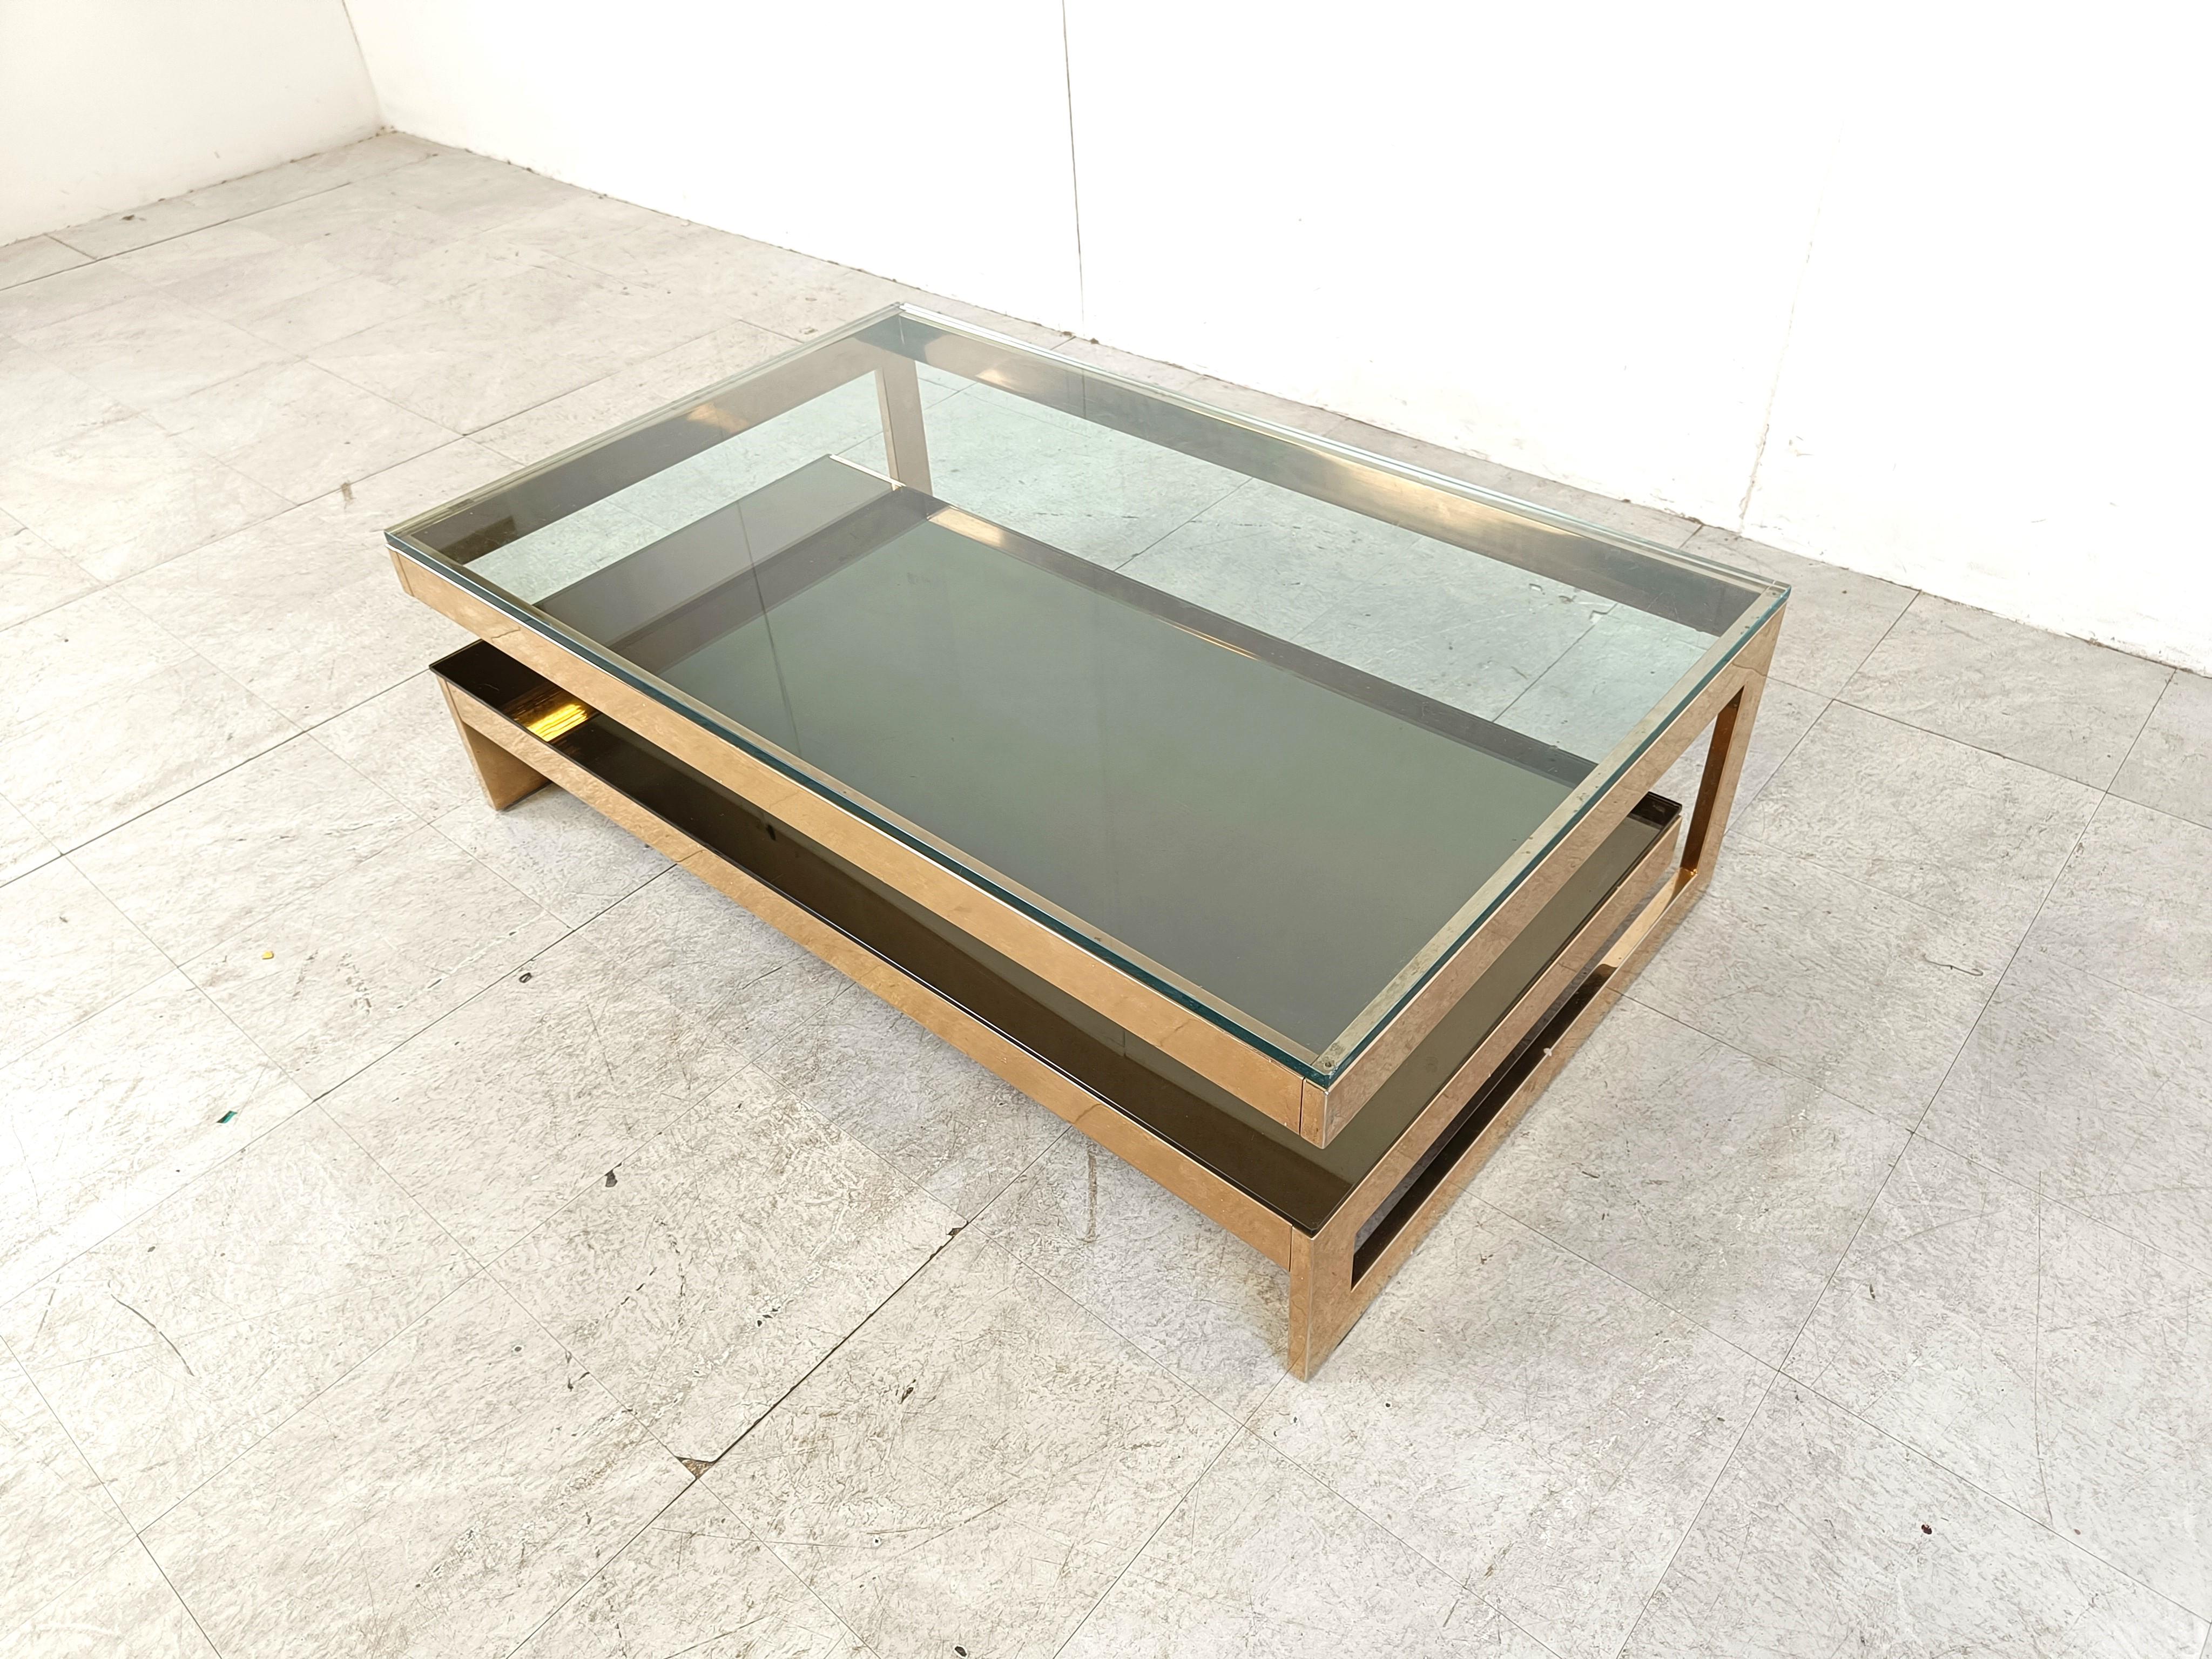 Table basse à deux niveaux en verre transparent épais et recouvert d'or 23kt de qualité, fabriquée par Belgochrom.

Cette table est un modèle populaire, appelé modèle 